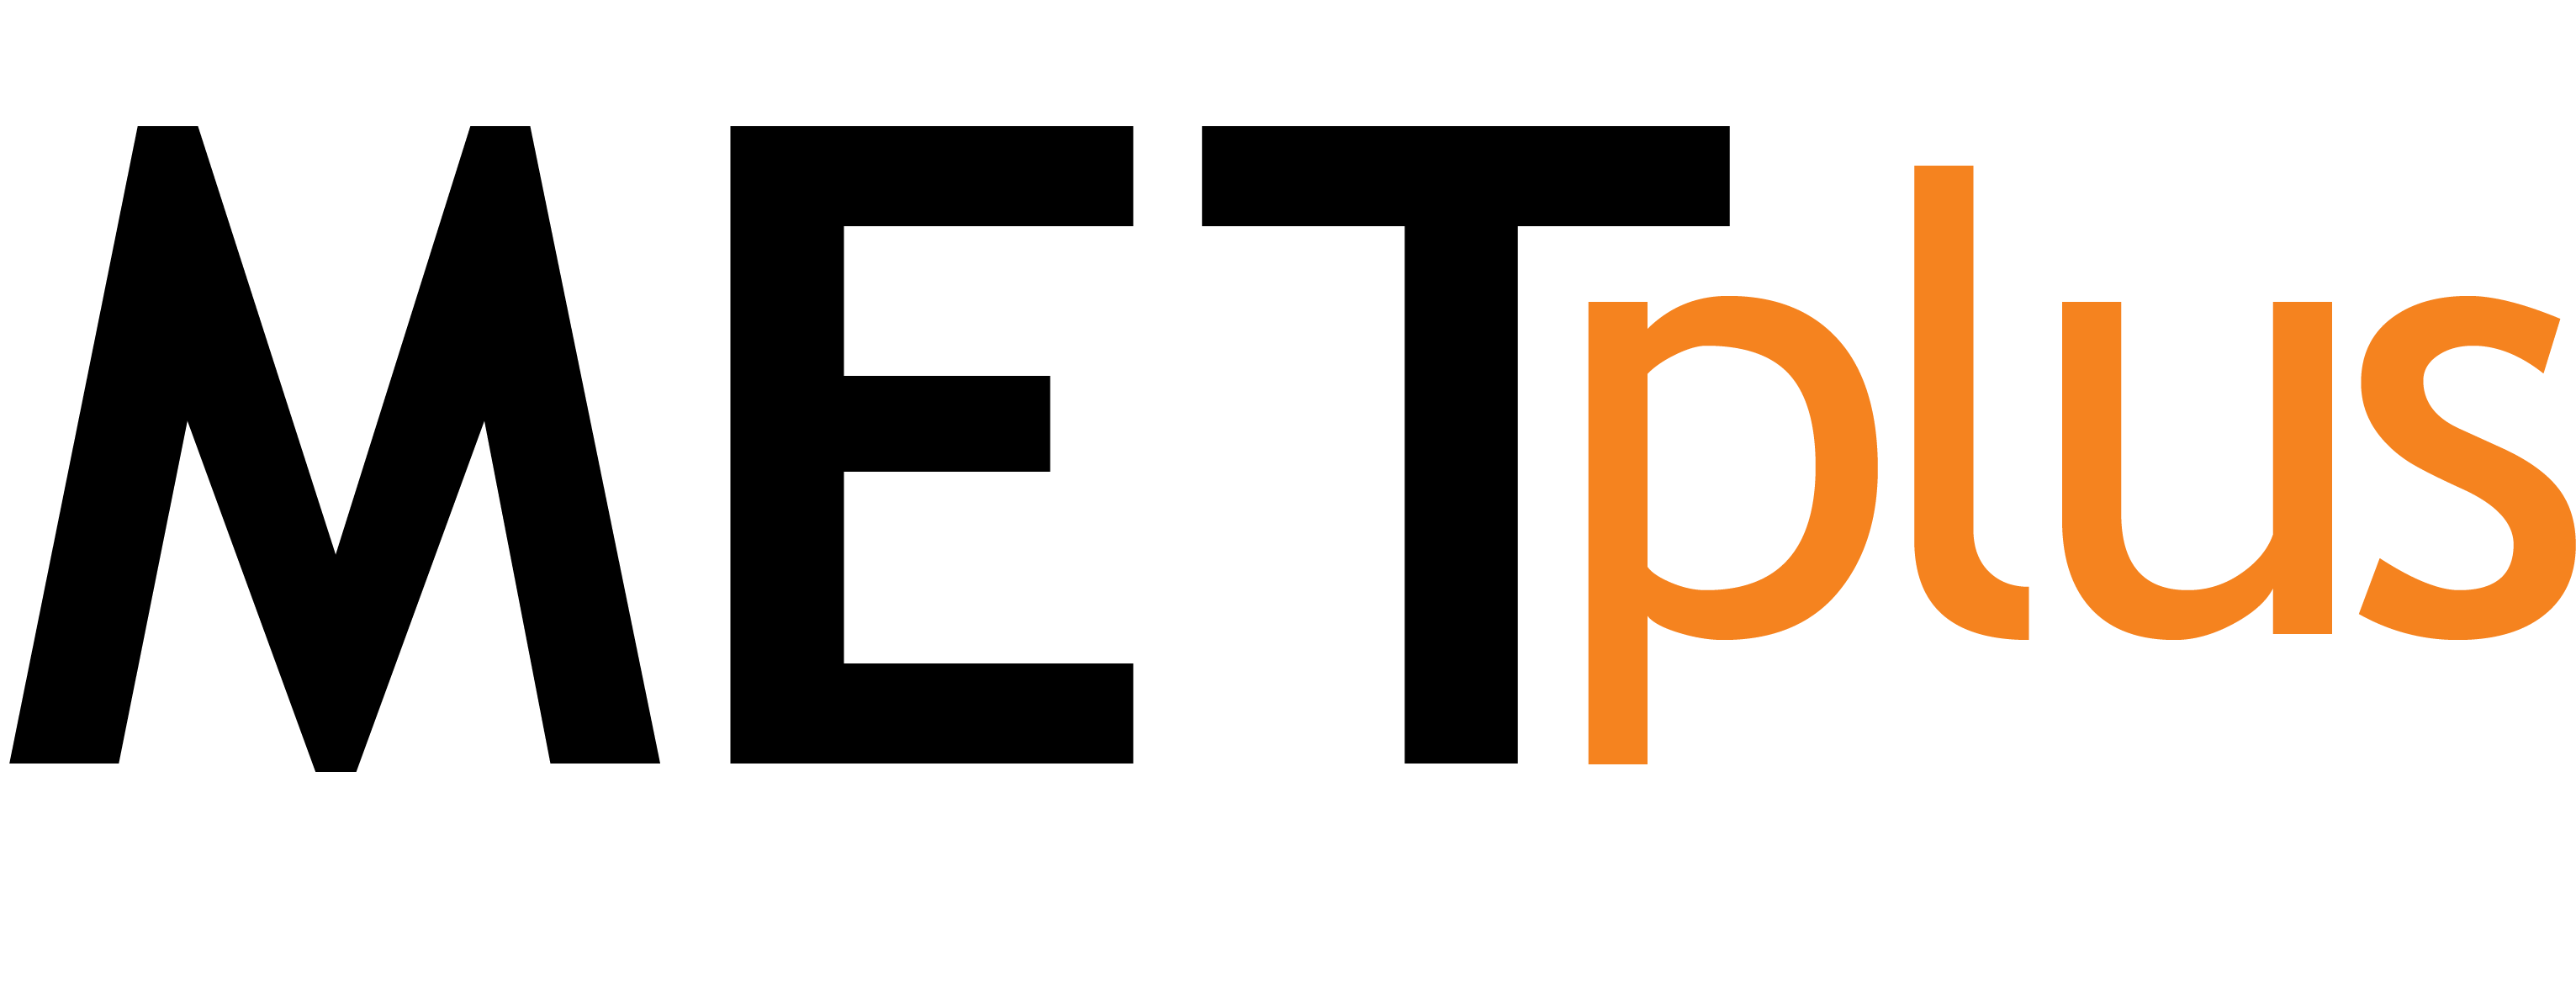 METplus_logo